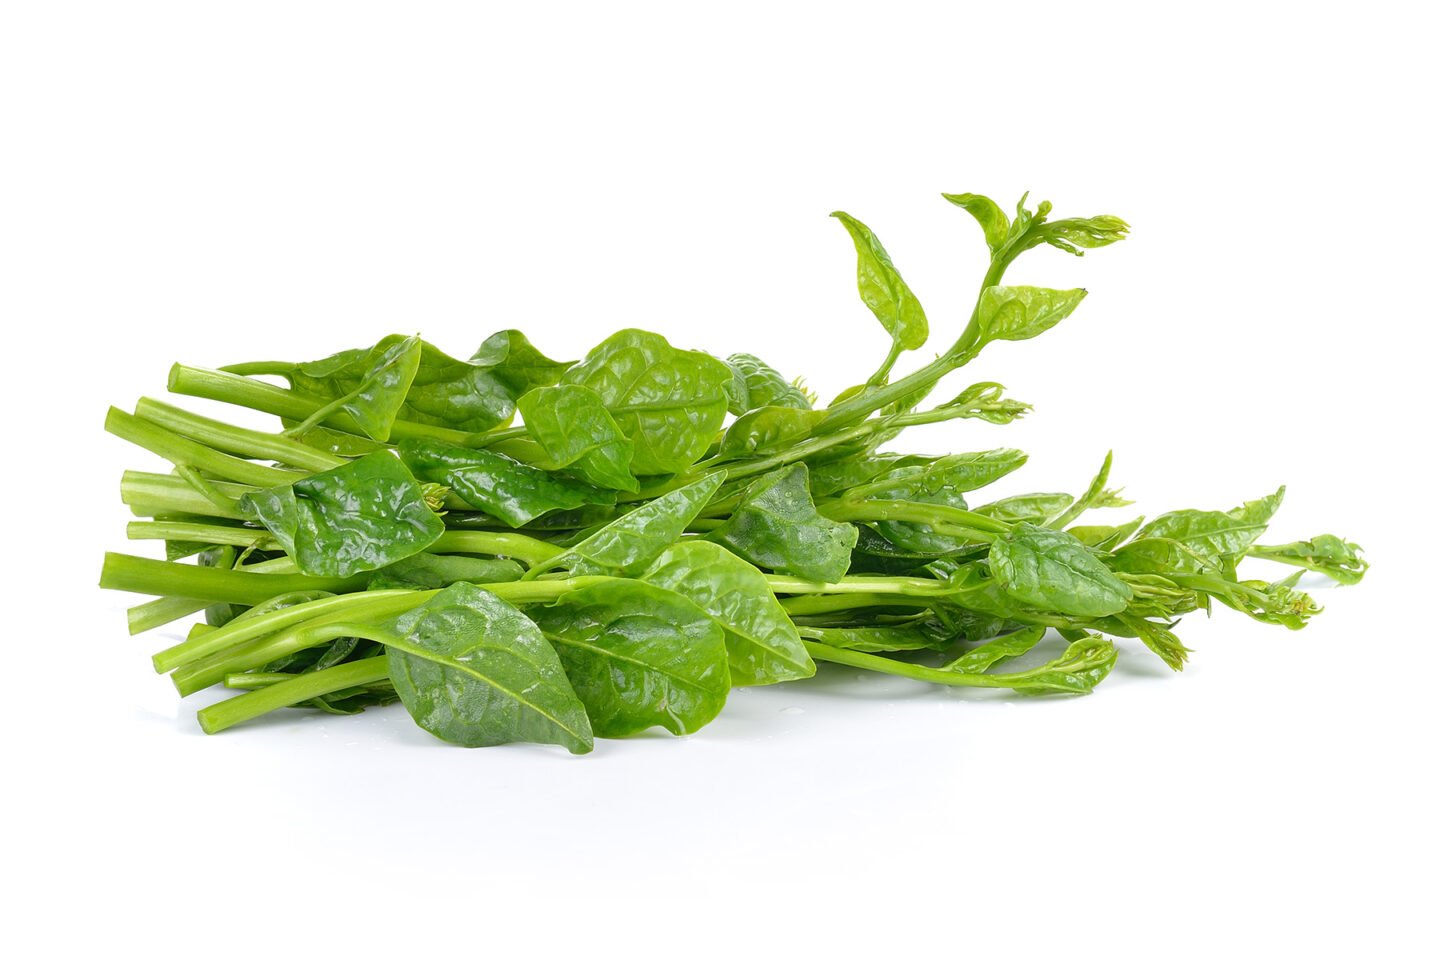 malabar spinach also known as ceylon spinach